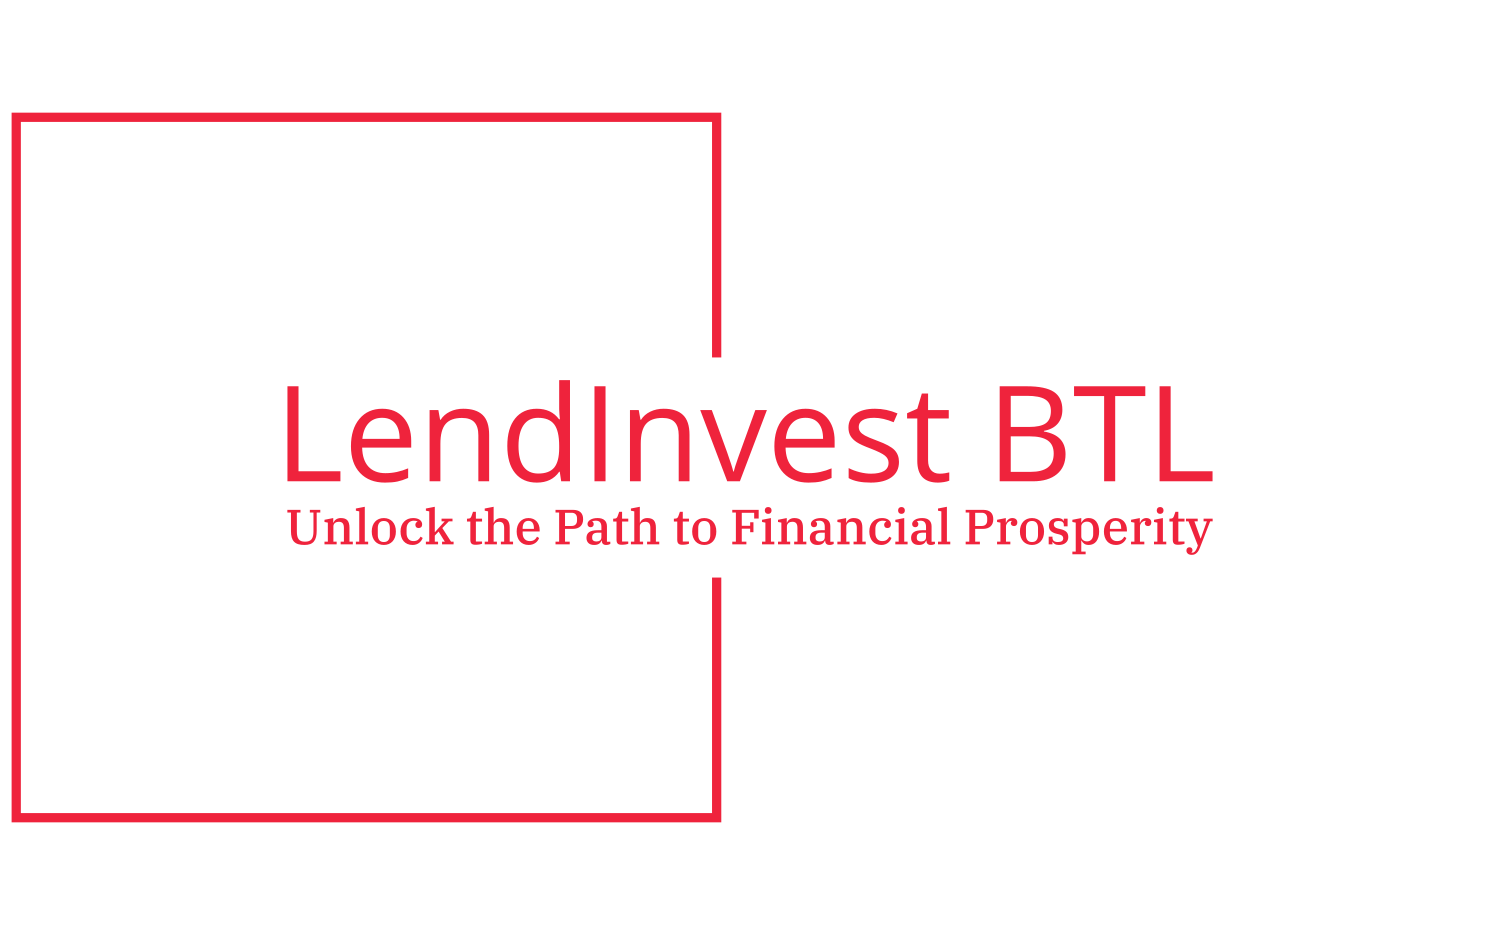 LendInvest BTL Limited